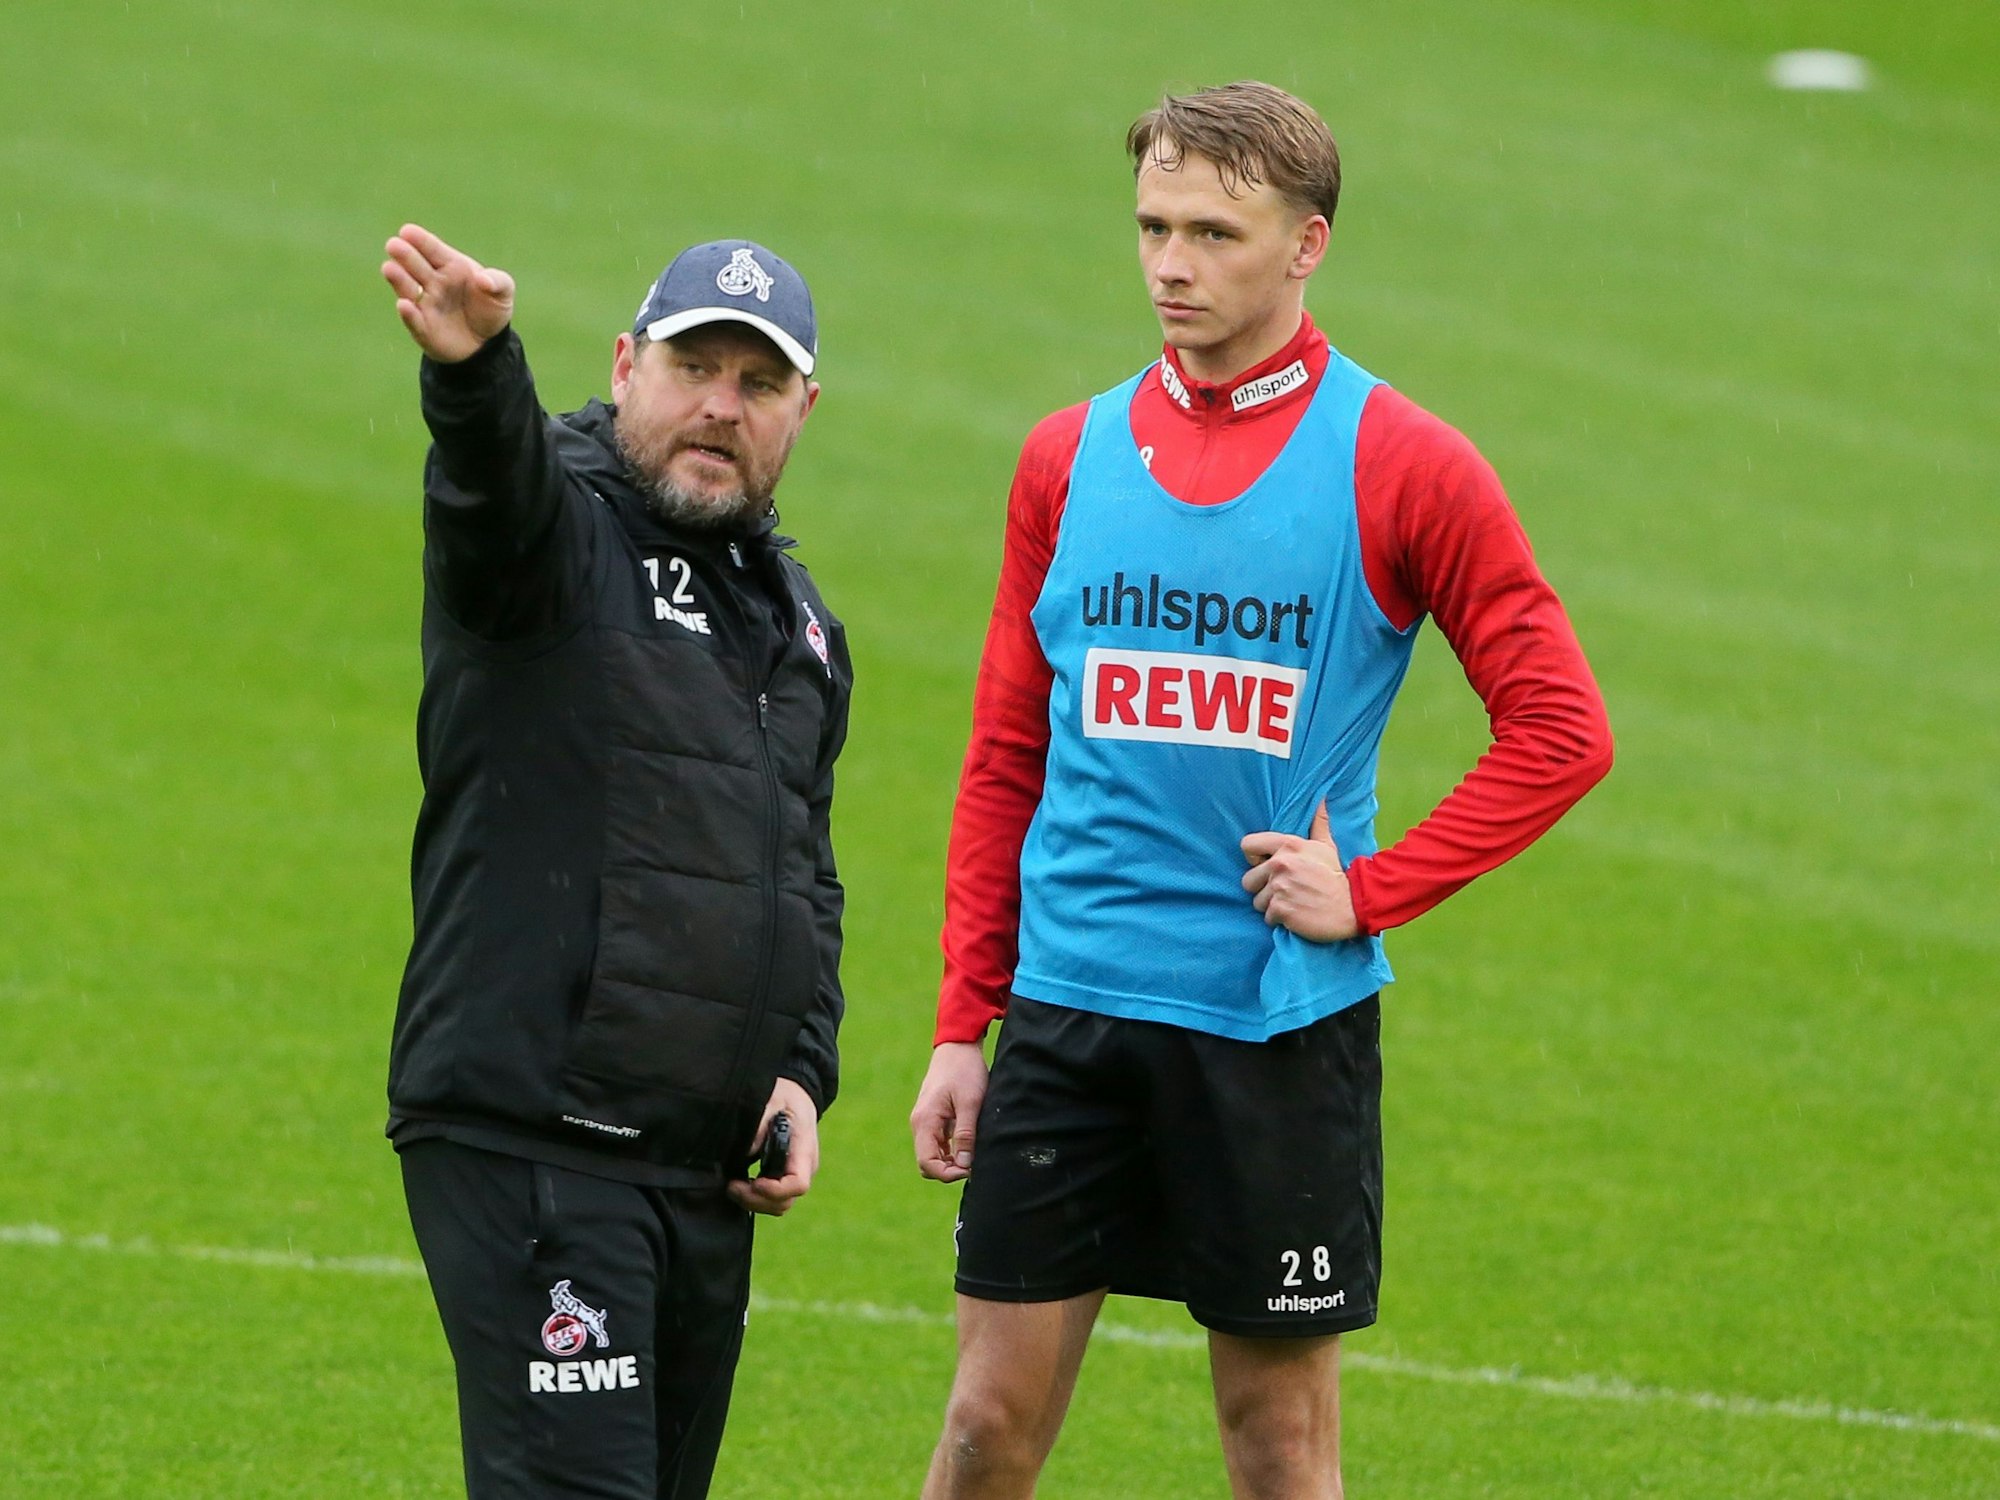 Steffen Baumgart gibt Mathias Olesen Anweisungen.